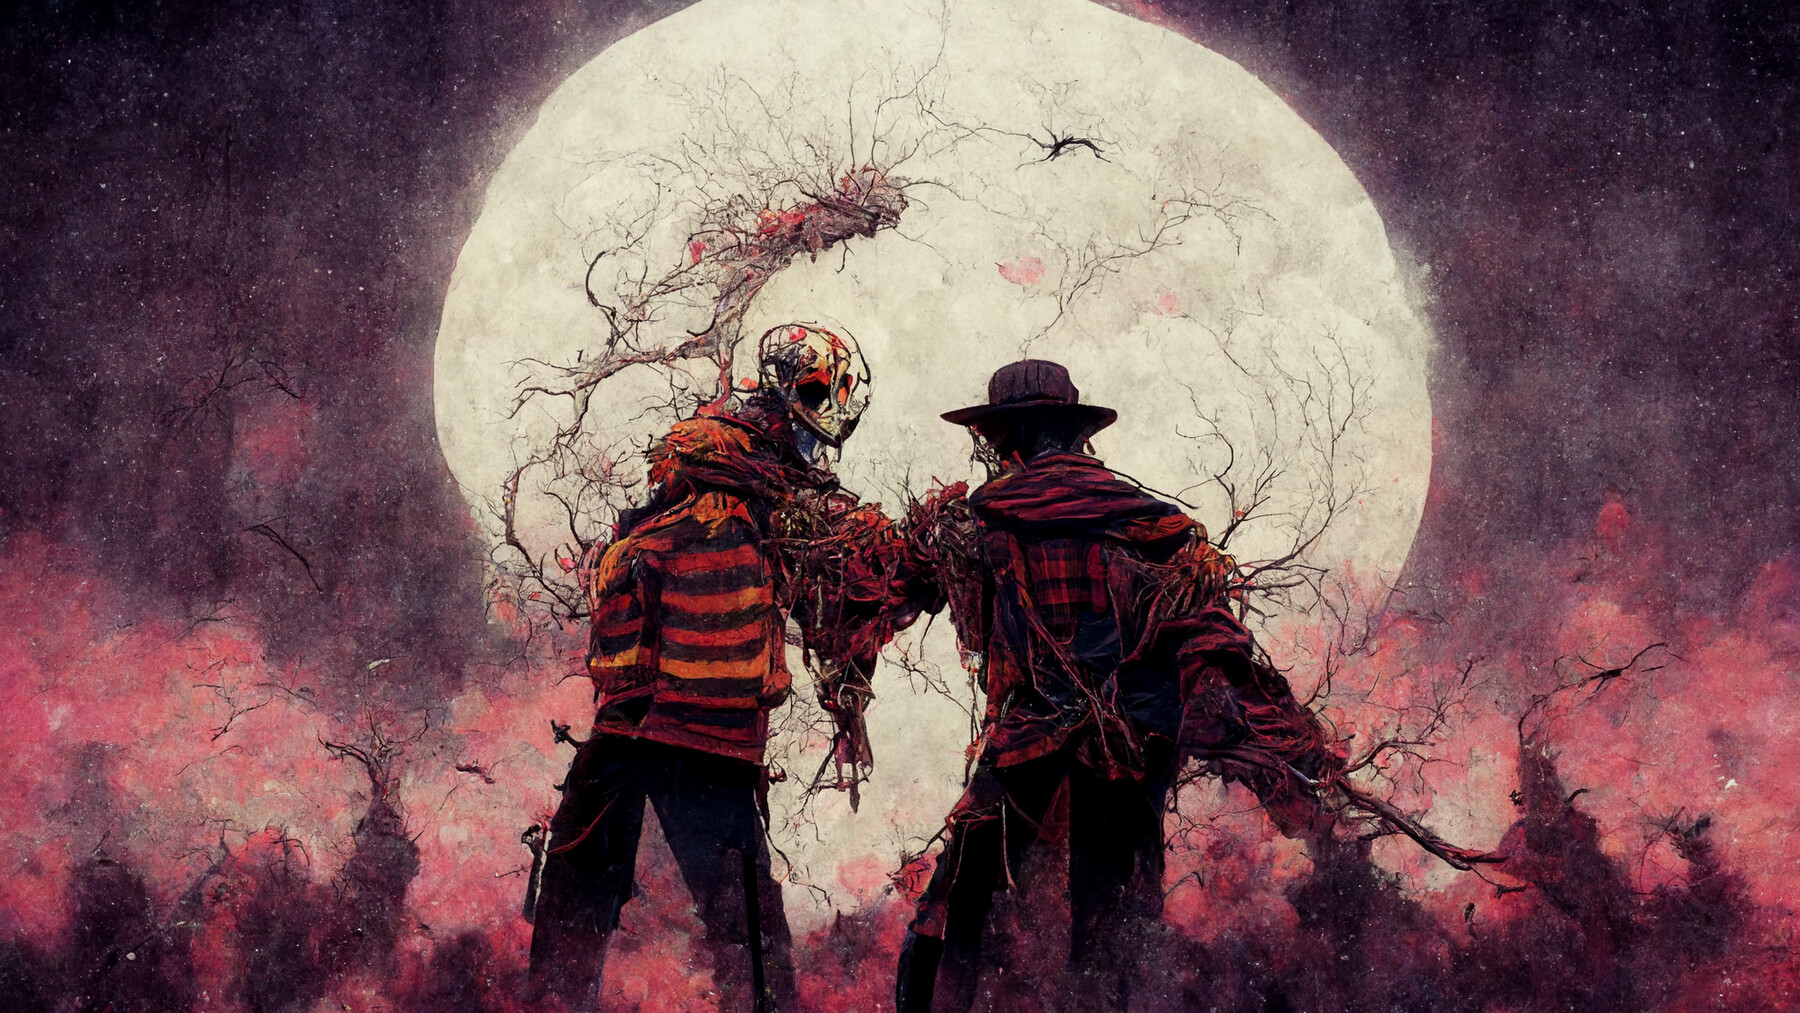 Freddy V.S Jason - Anime by BrunaFiorito on DeviantArt